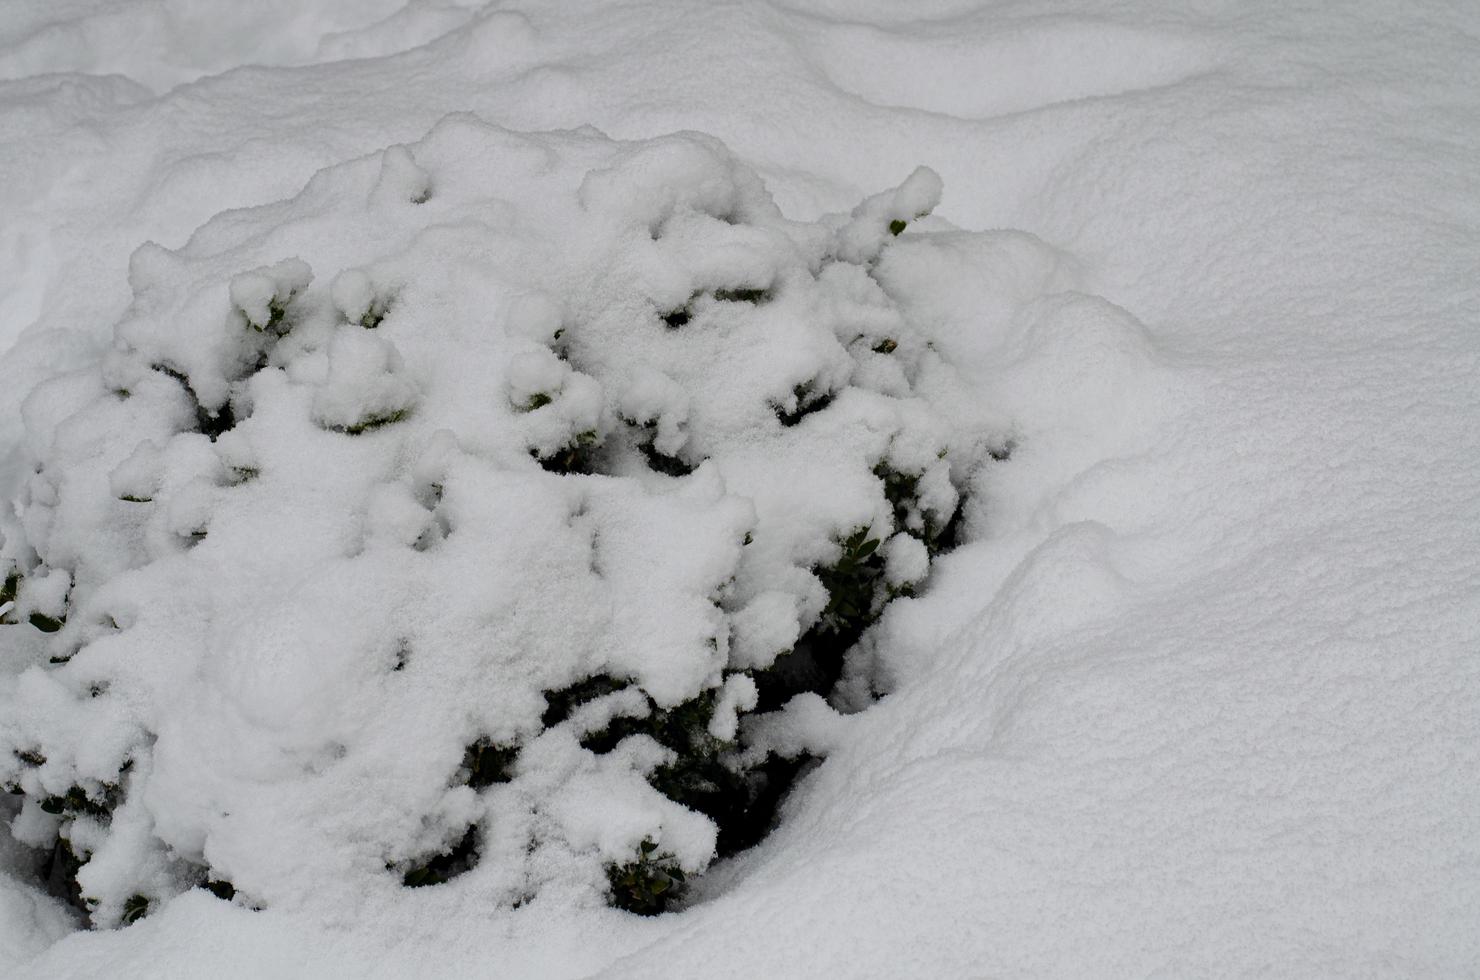 inverno. la prima neve sui rami dei cespugli e degli alberi. foto